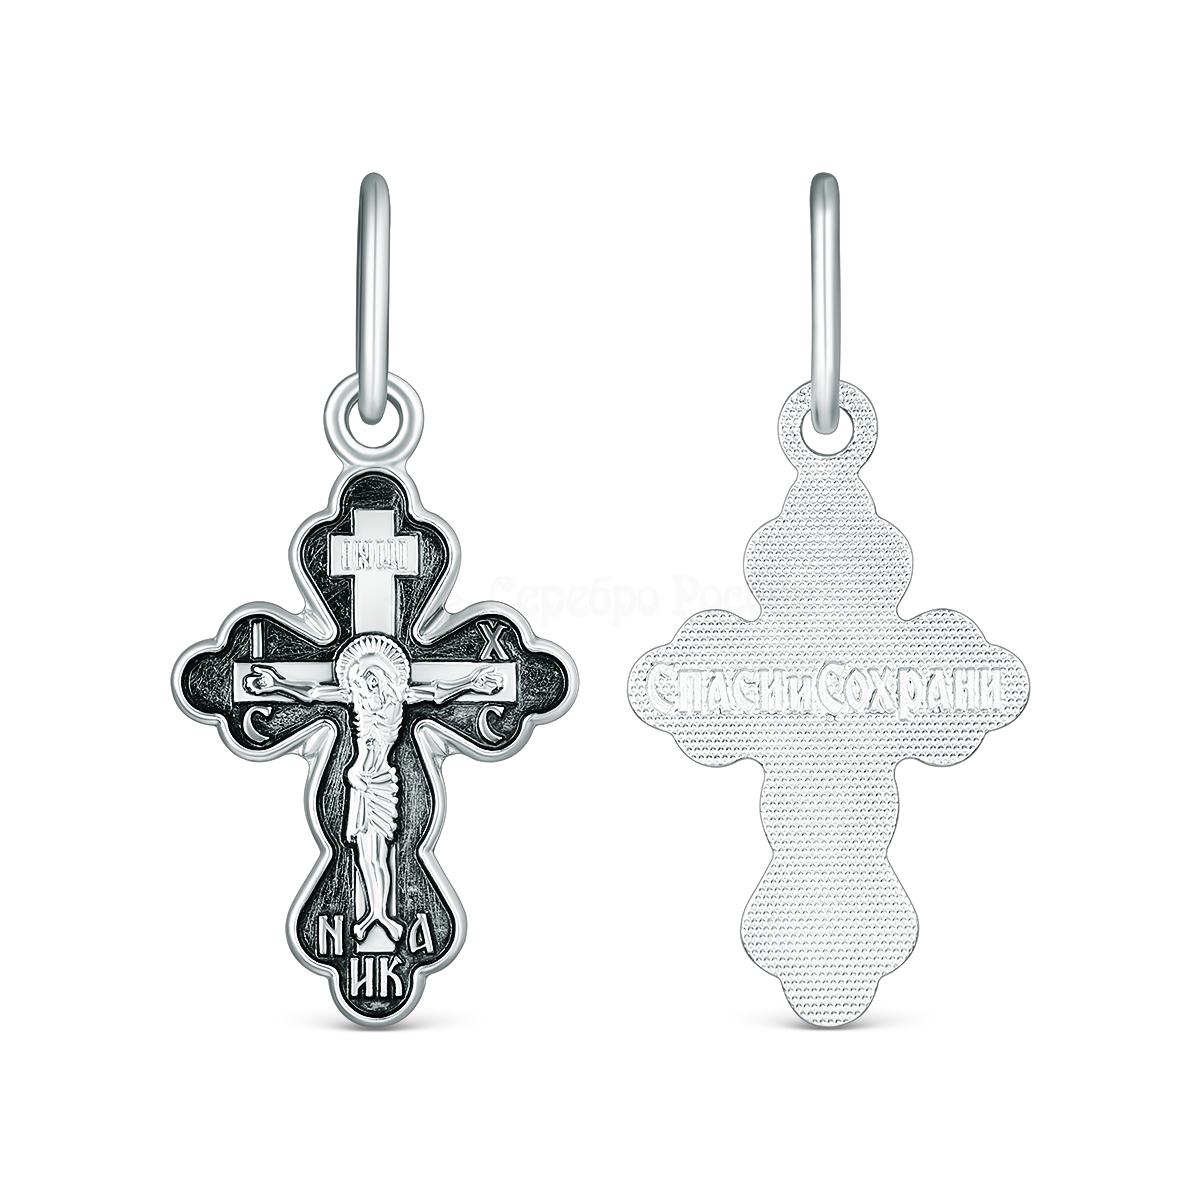 Крест православный из чернёного серебра - Спаси и сохрани 1-038-3.55 1-038-3.55